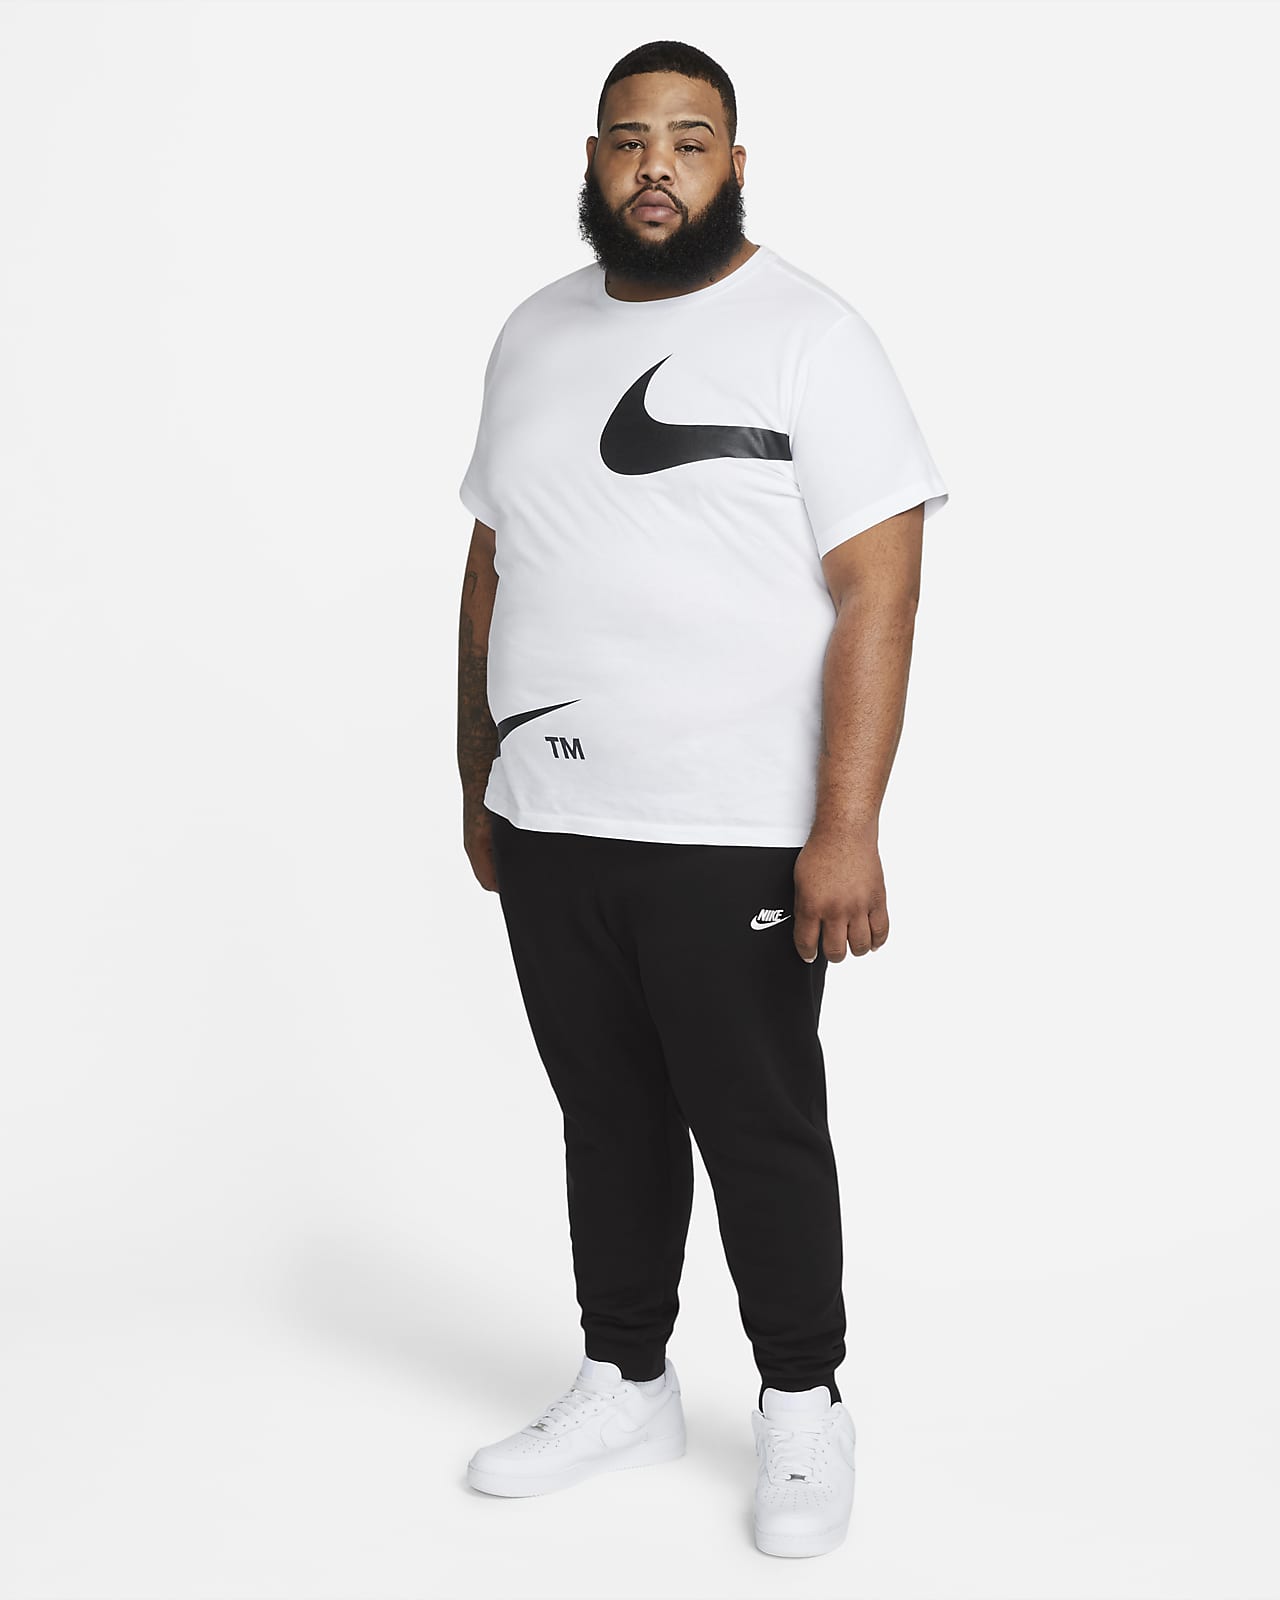 Nike Jogger Pants (UNISEX), Men's Fashion, Bottoms, Joggers on